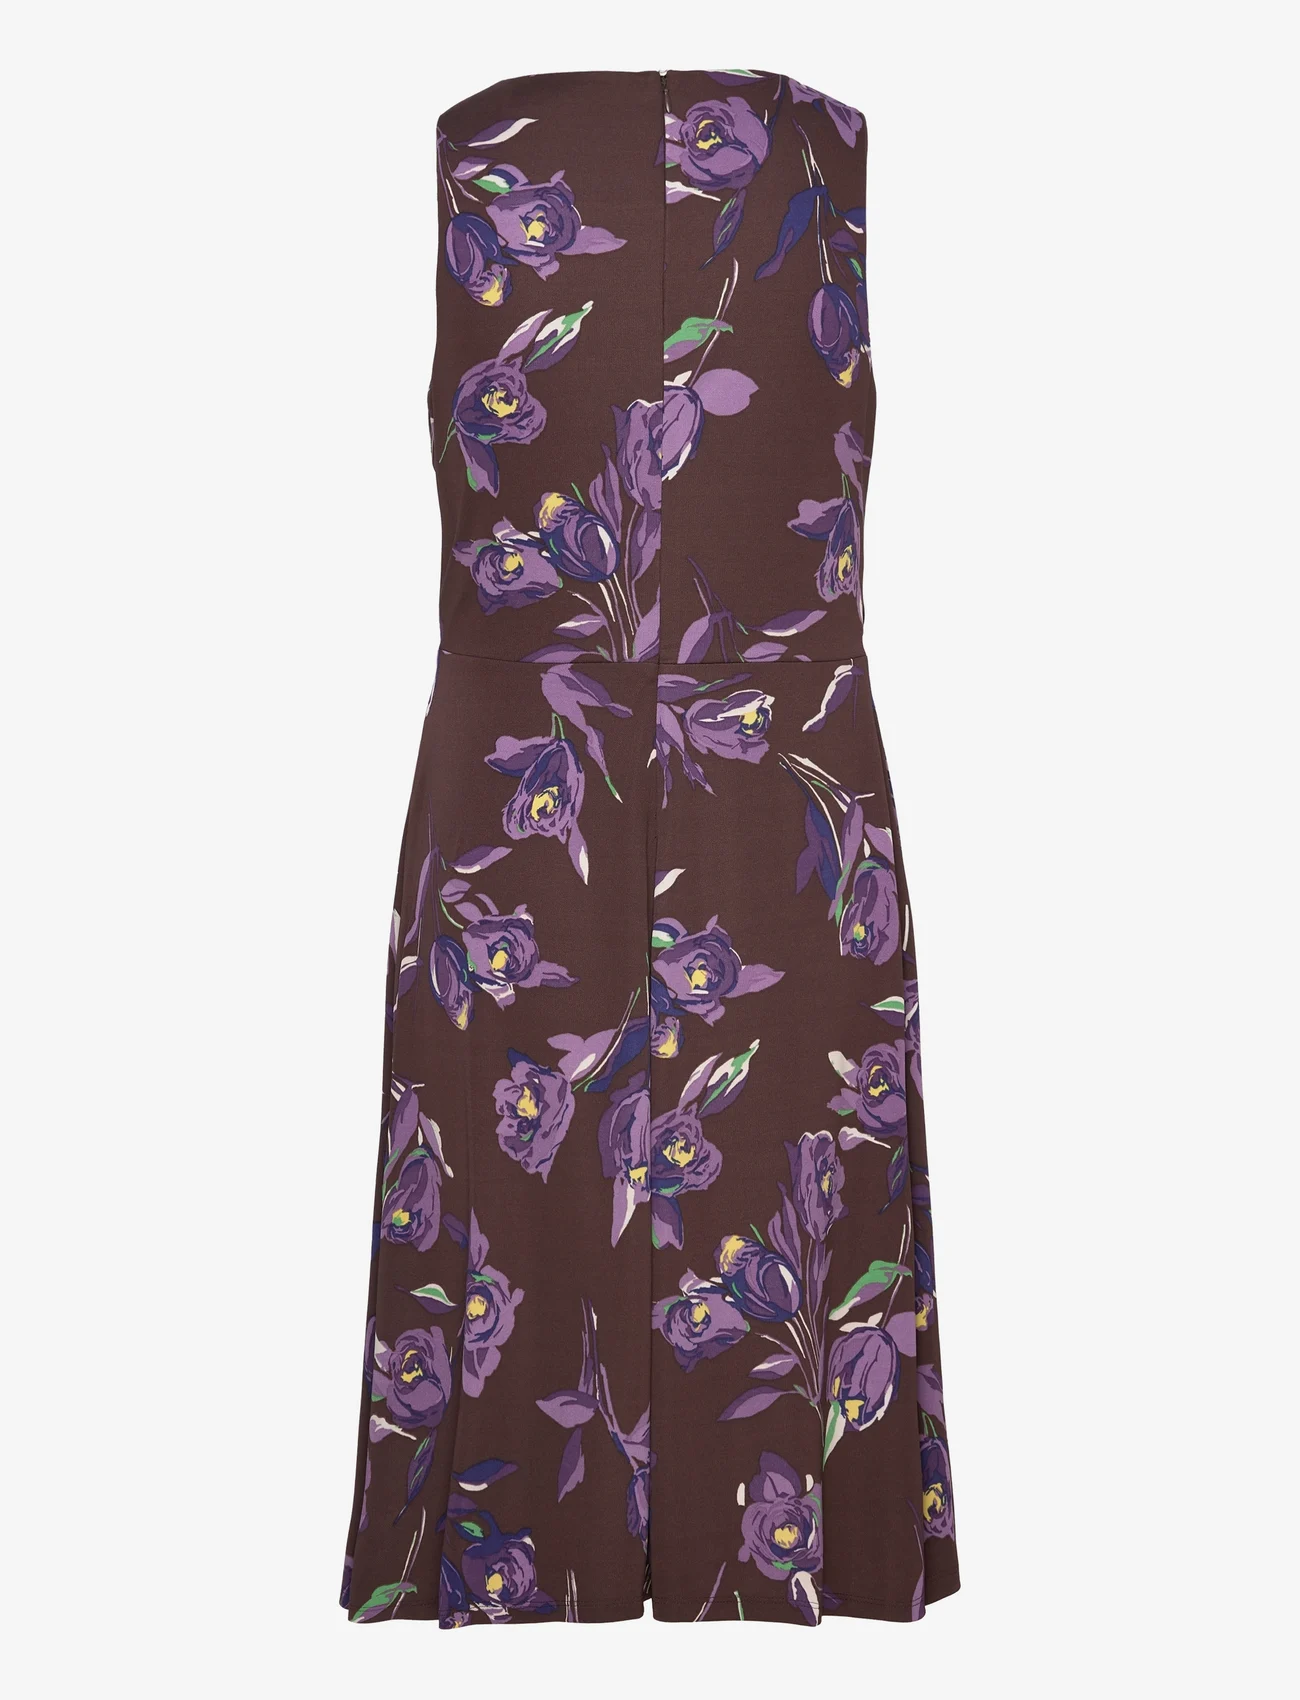 Lauren Ralph Lauren - Floral Surplice Jersey Sleeveless Dress - vasaras kleitas - brown/purple/mult - 1